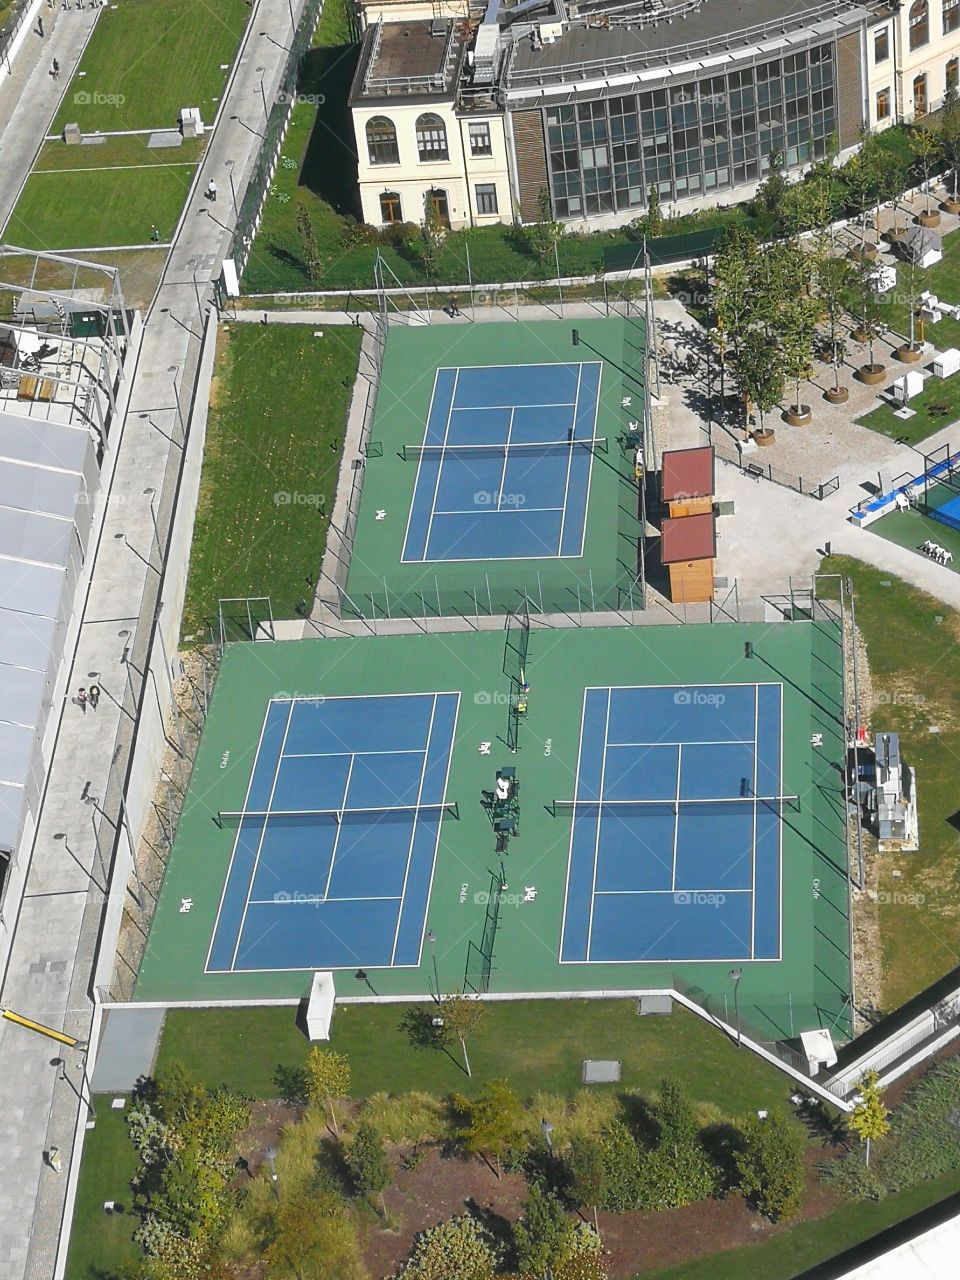 Rectangular tennis field